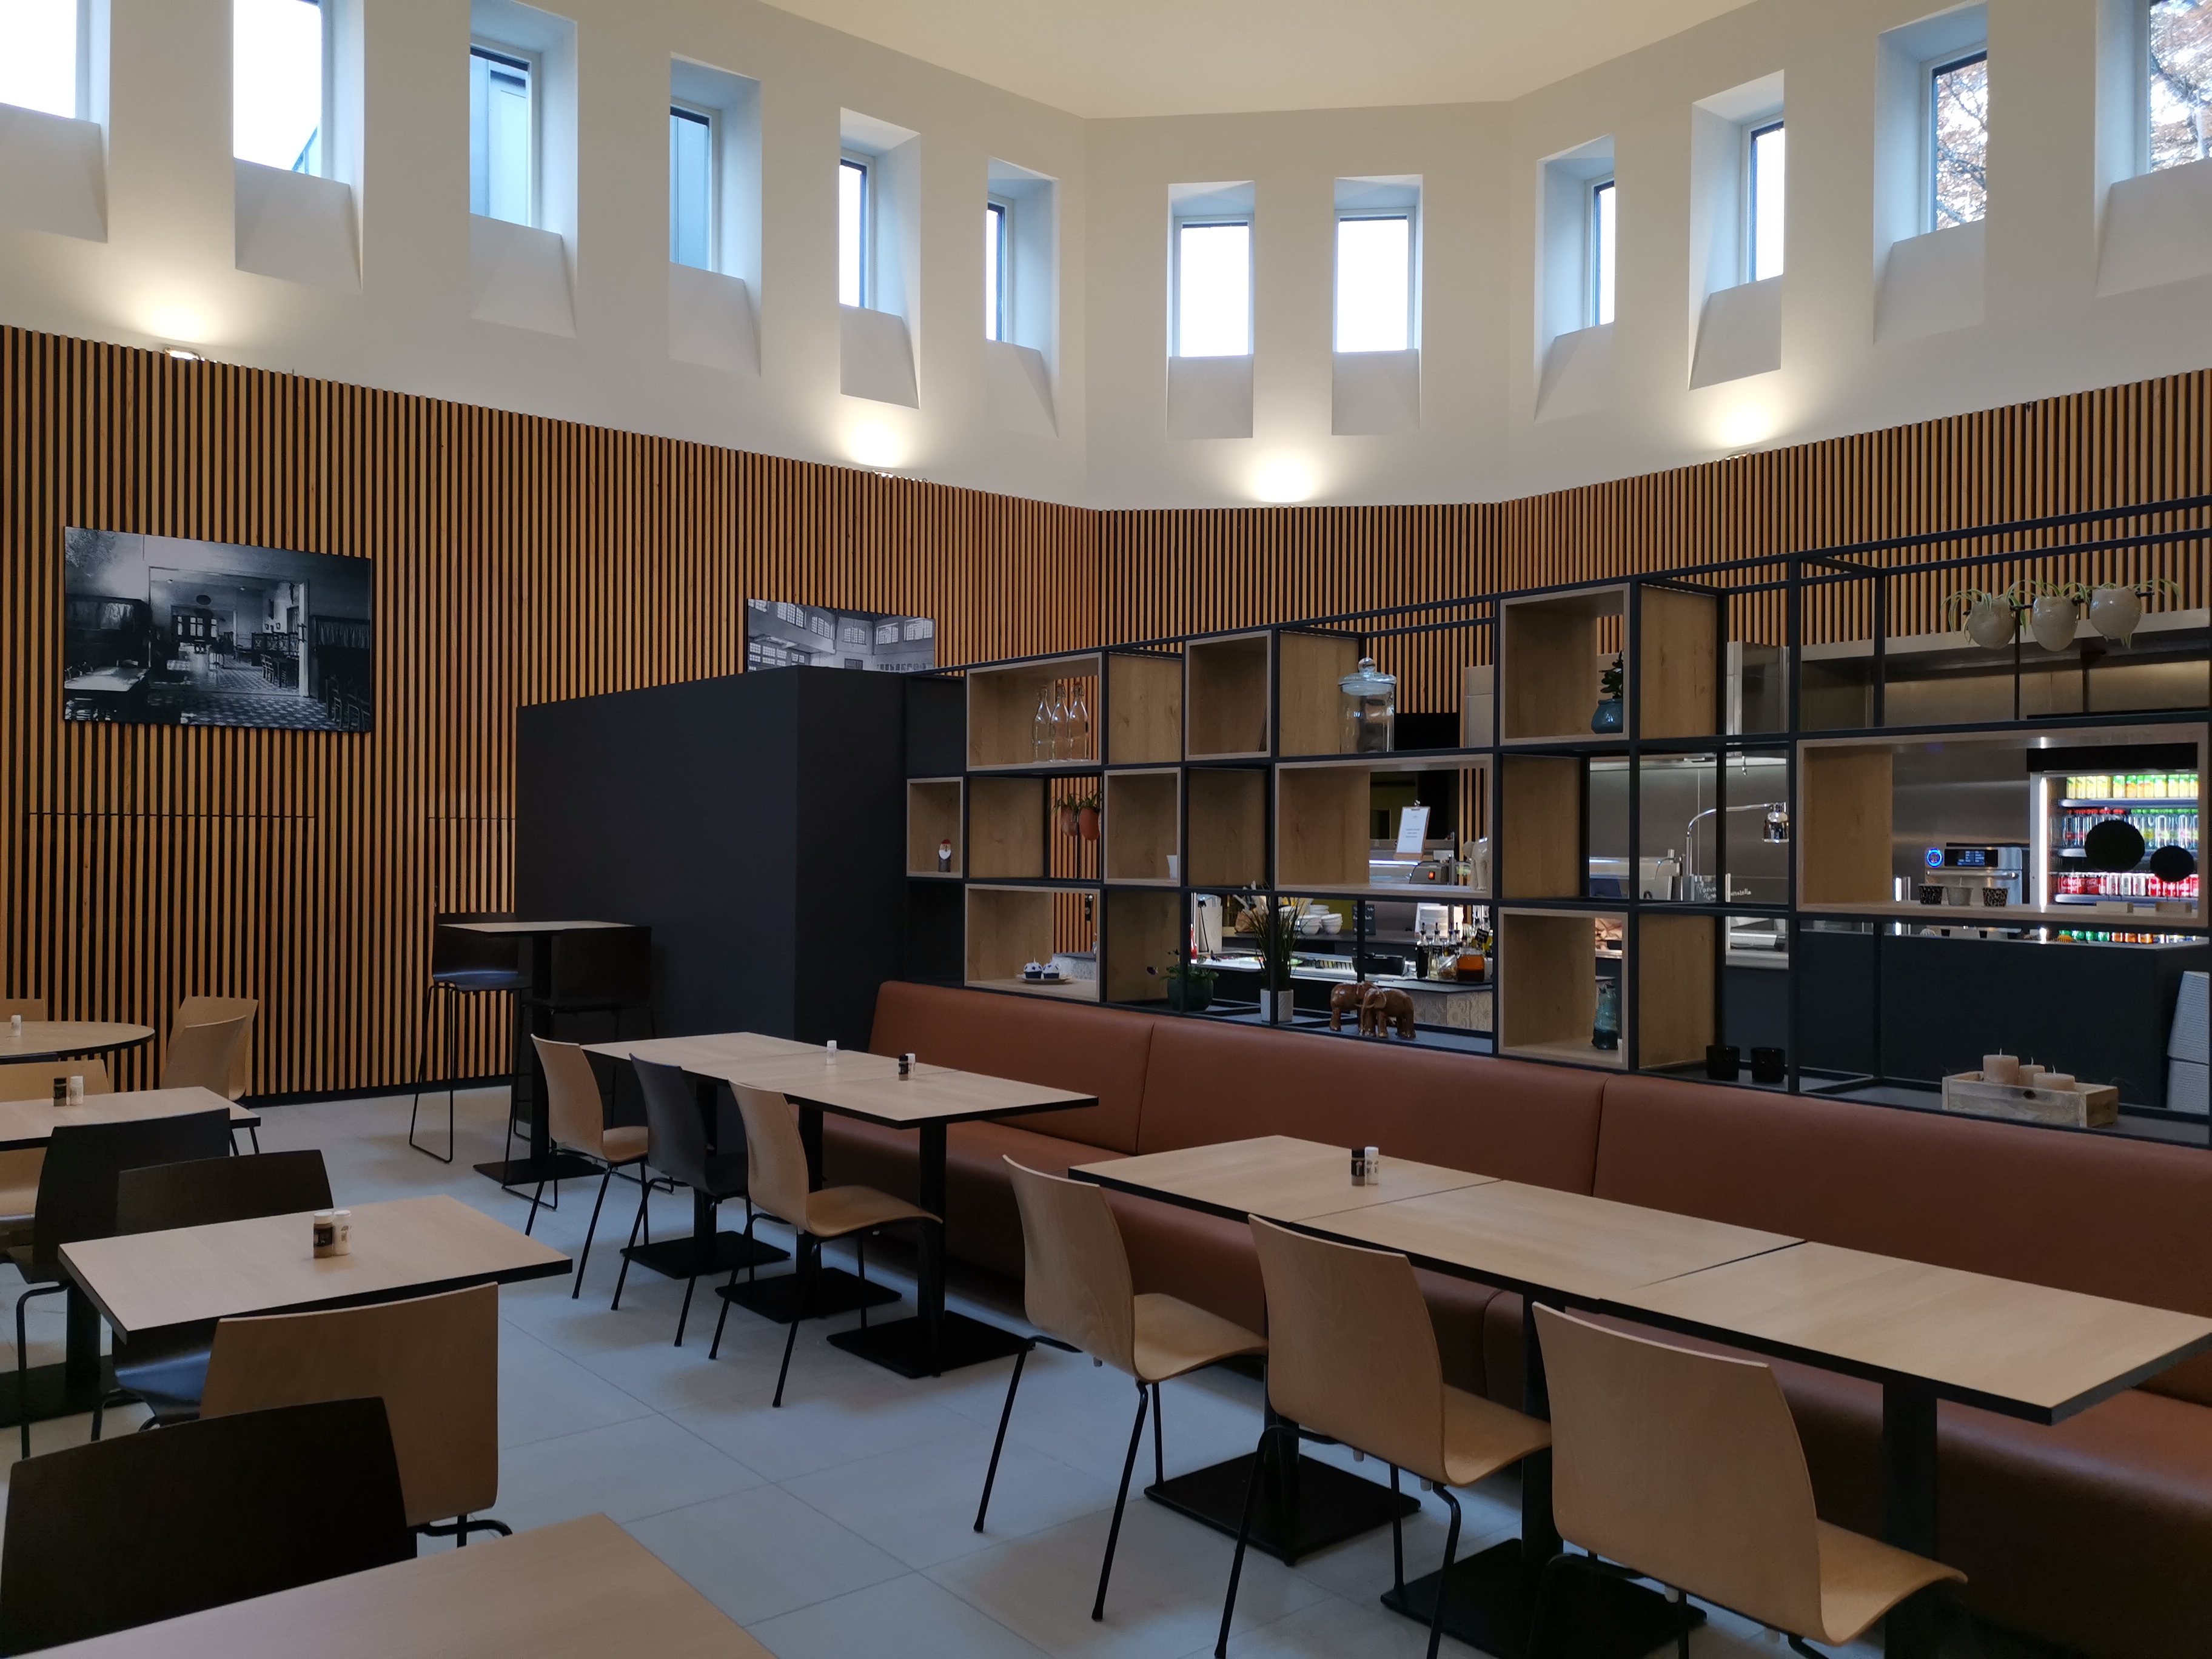 Cafetaria campus Krijkelberg